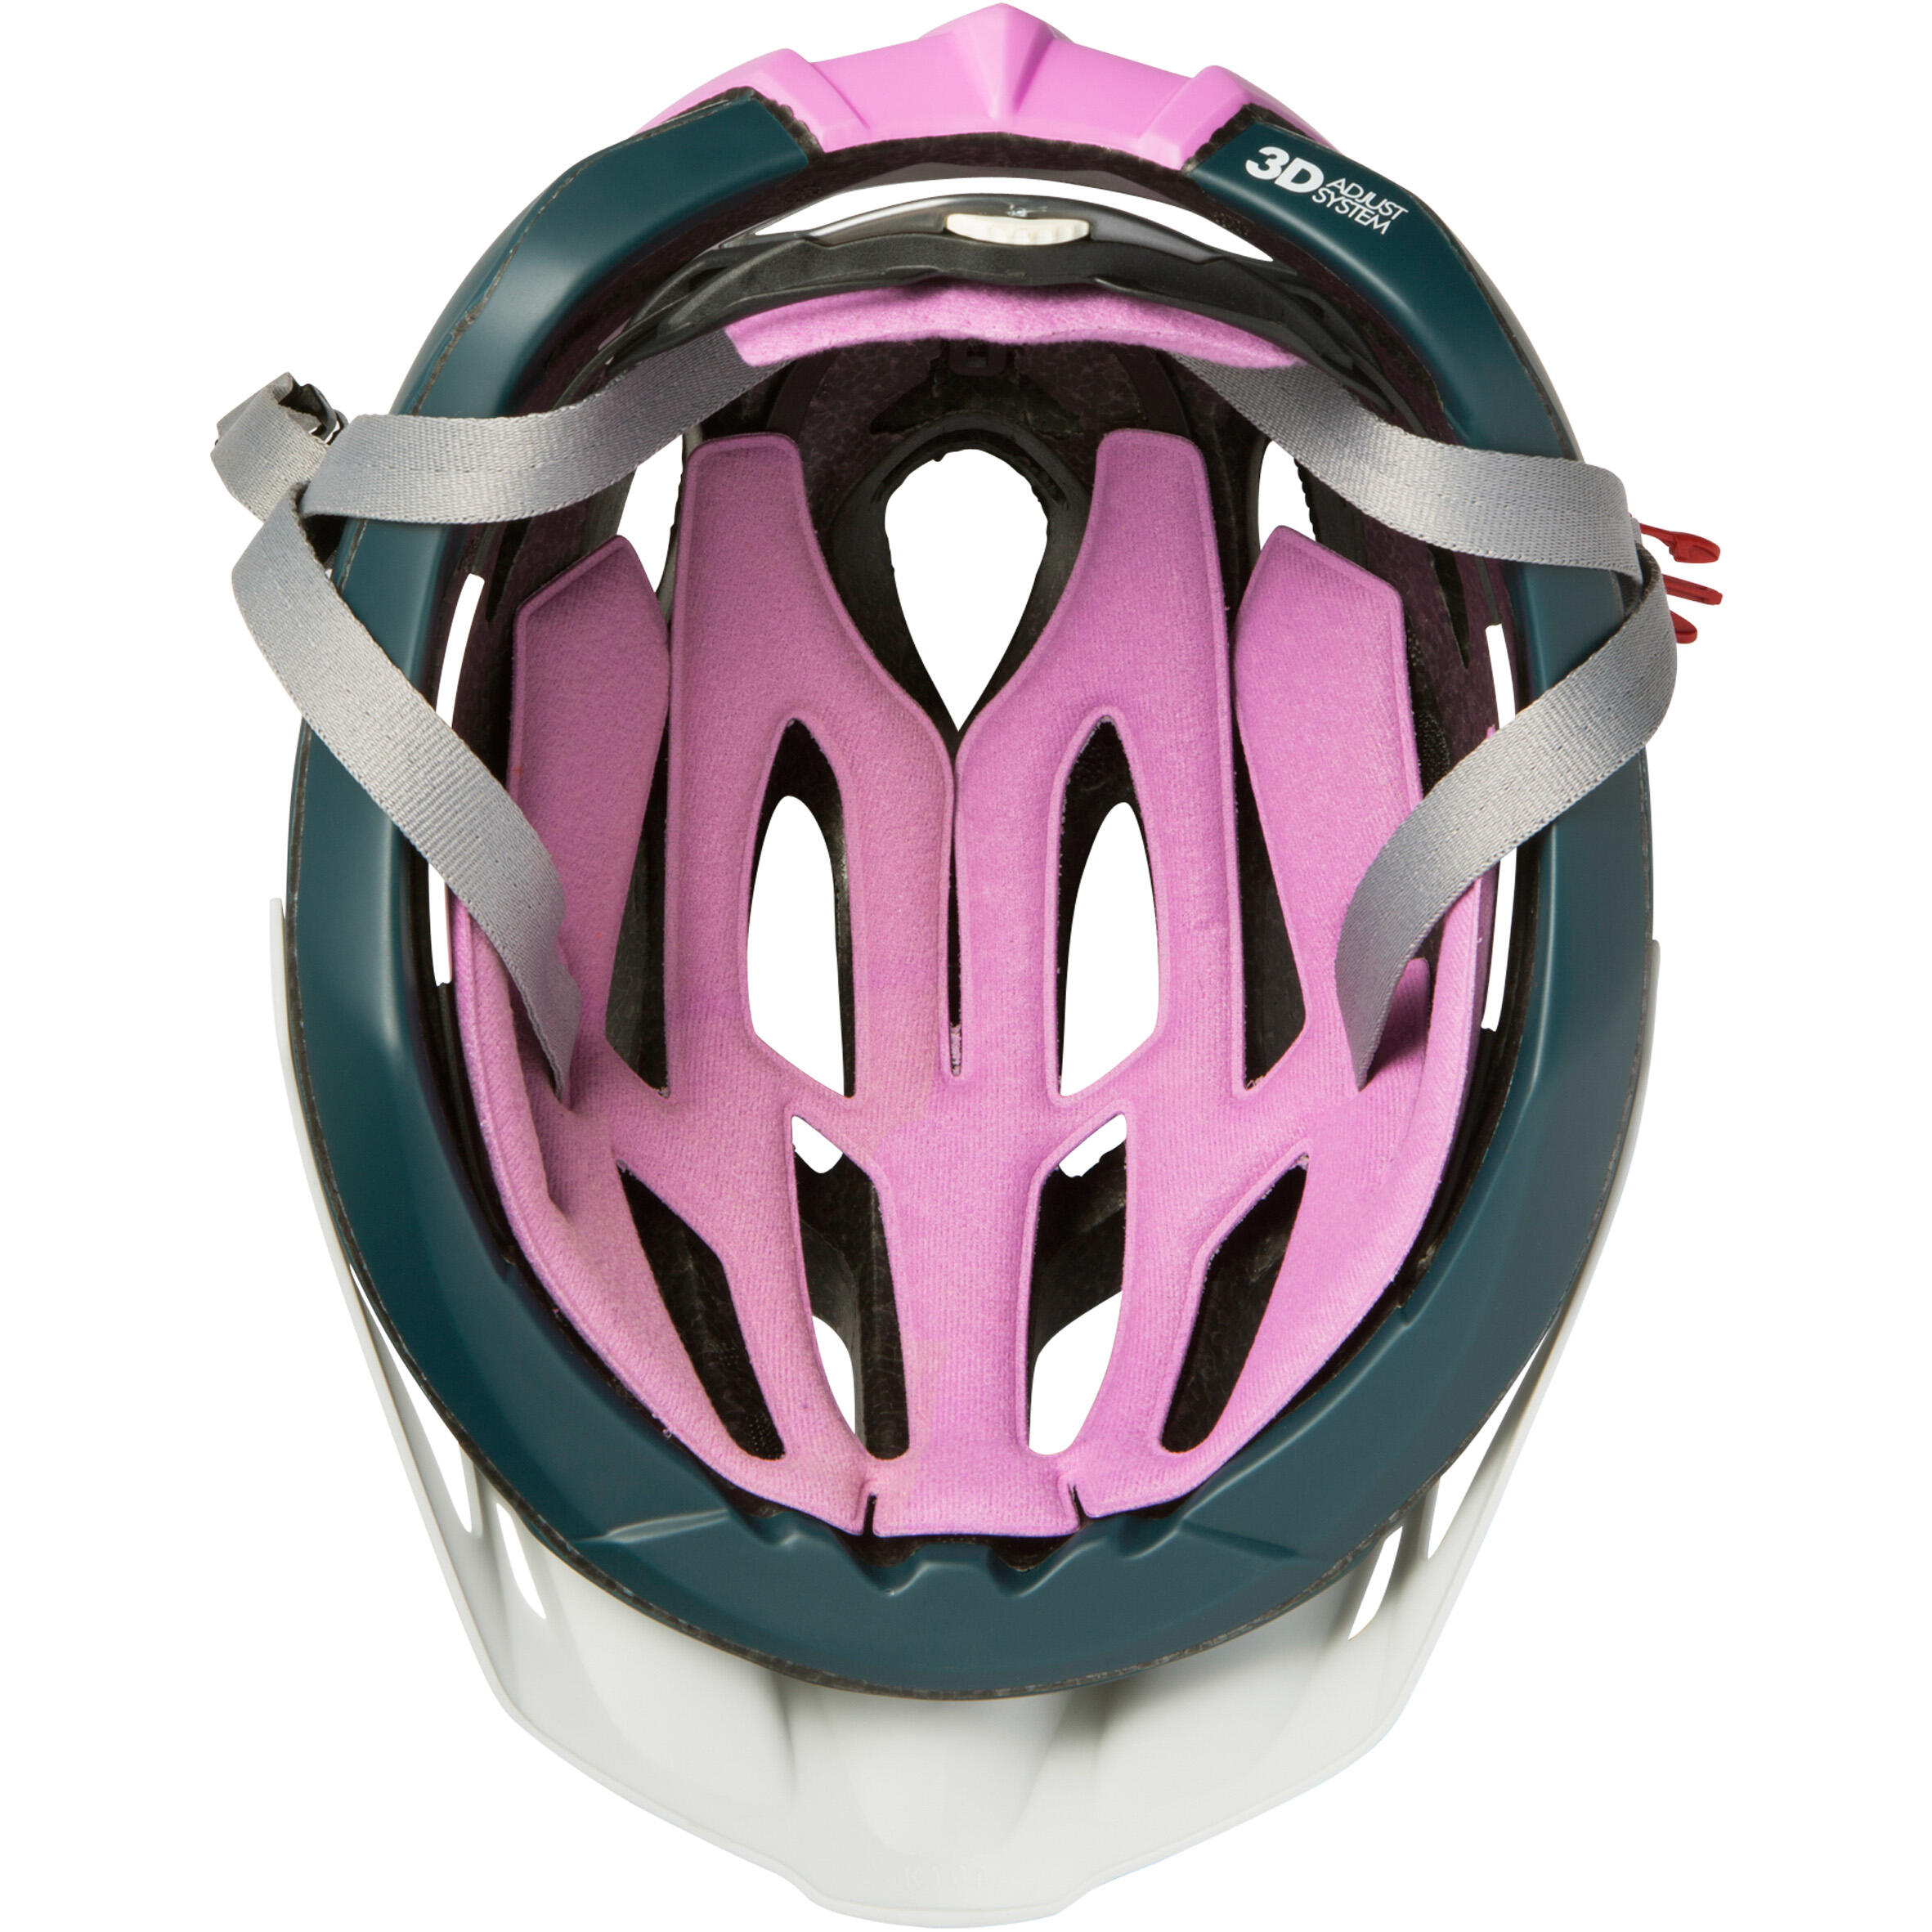 500 Women's Cycling Helmet 9/14